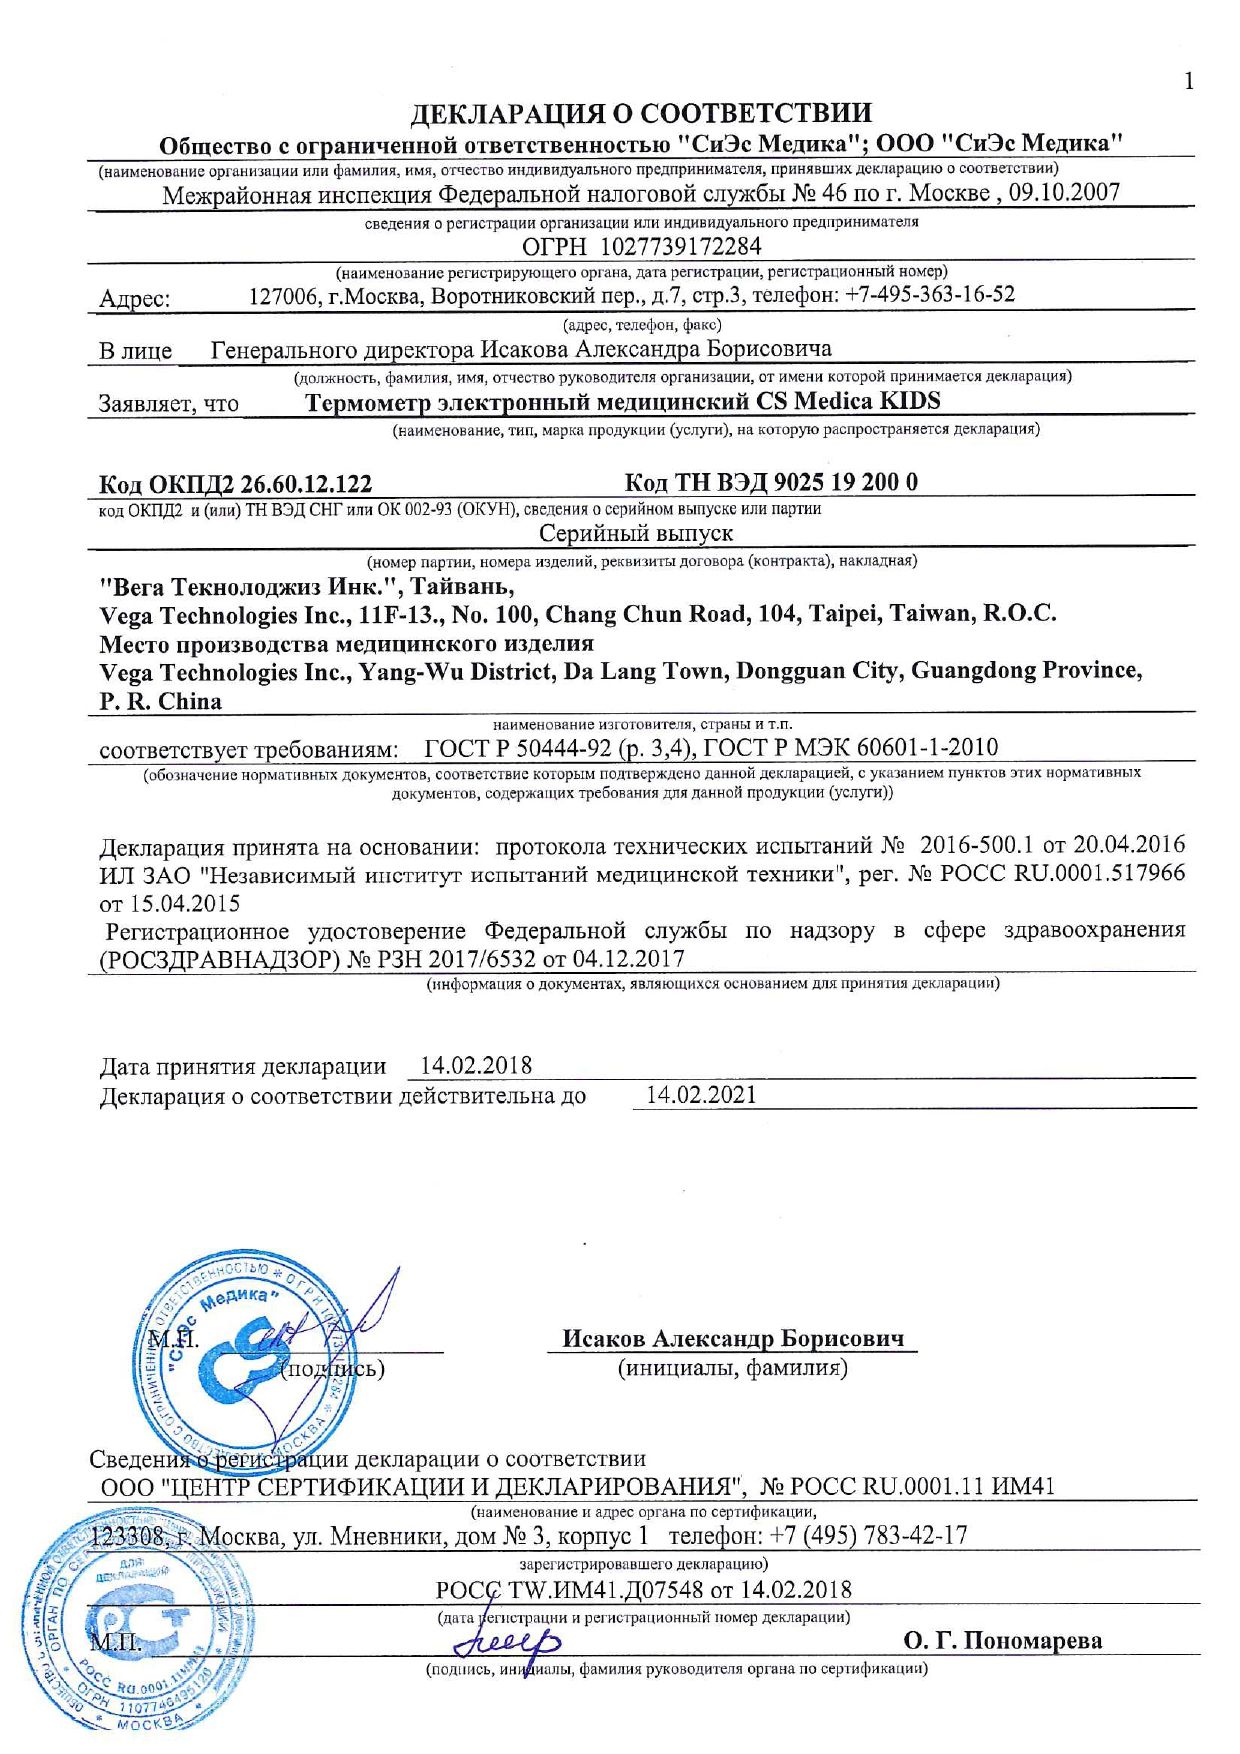 Термометр электронный CS Medica Kids CS - 82 - F лягушка сертификат